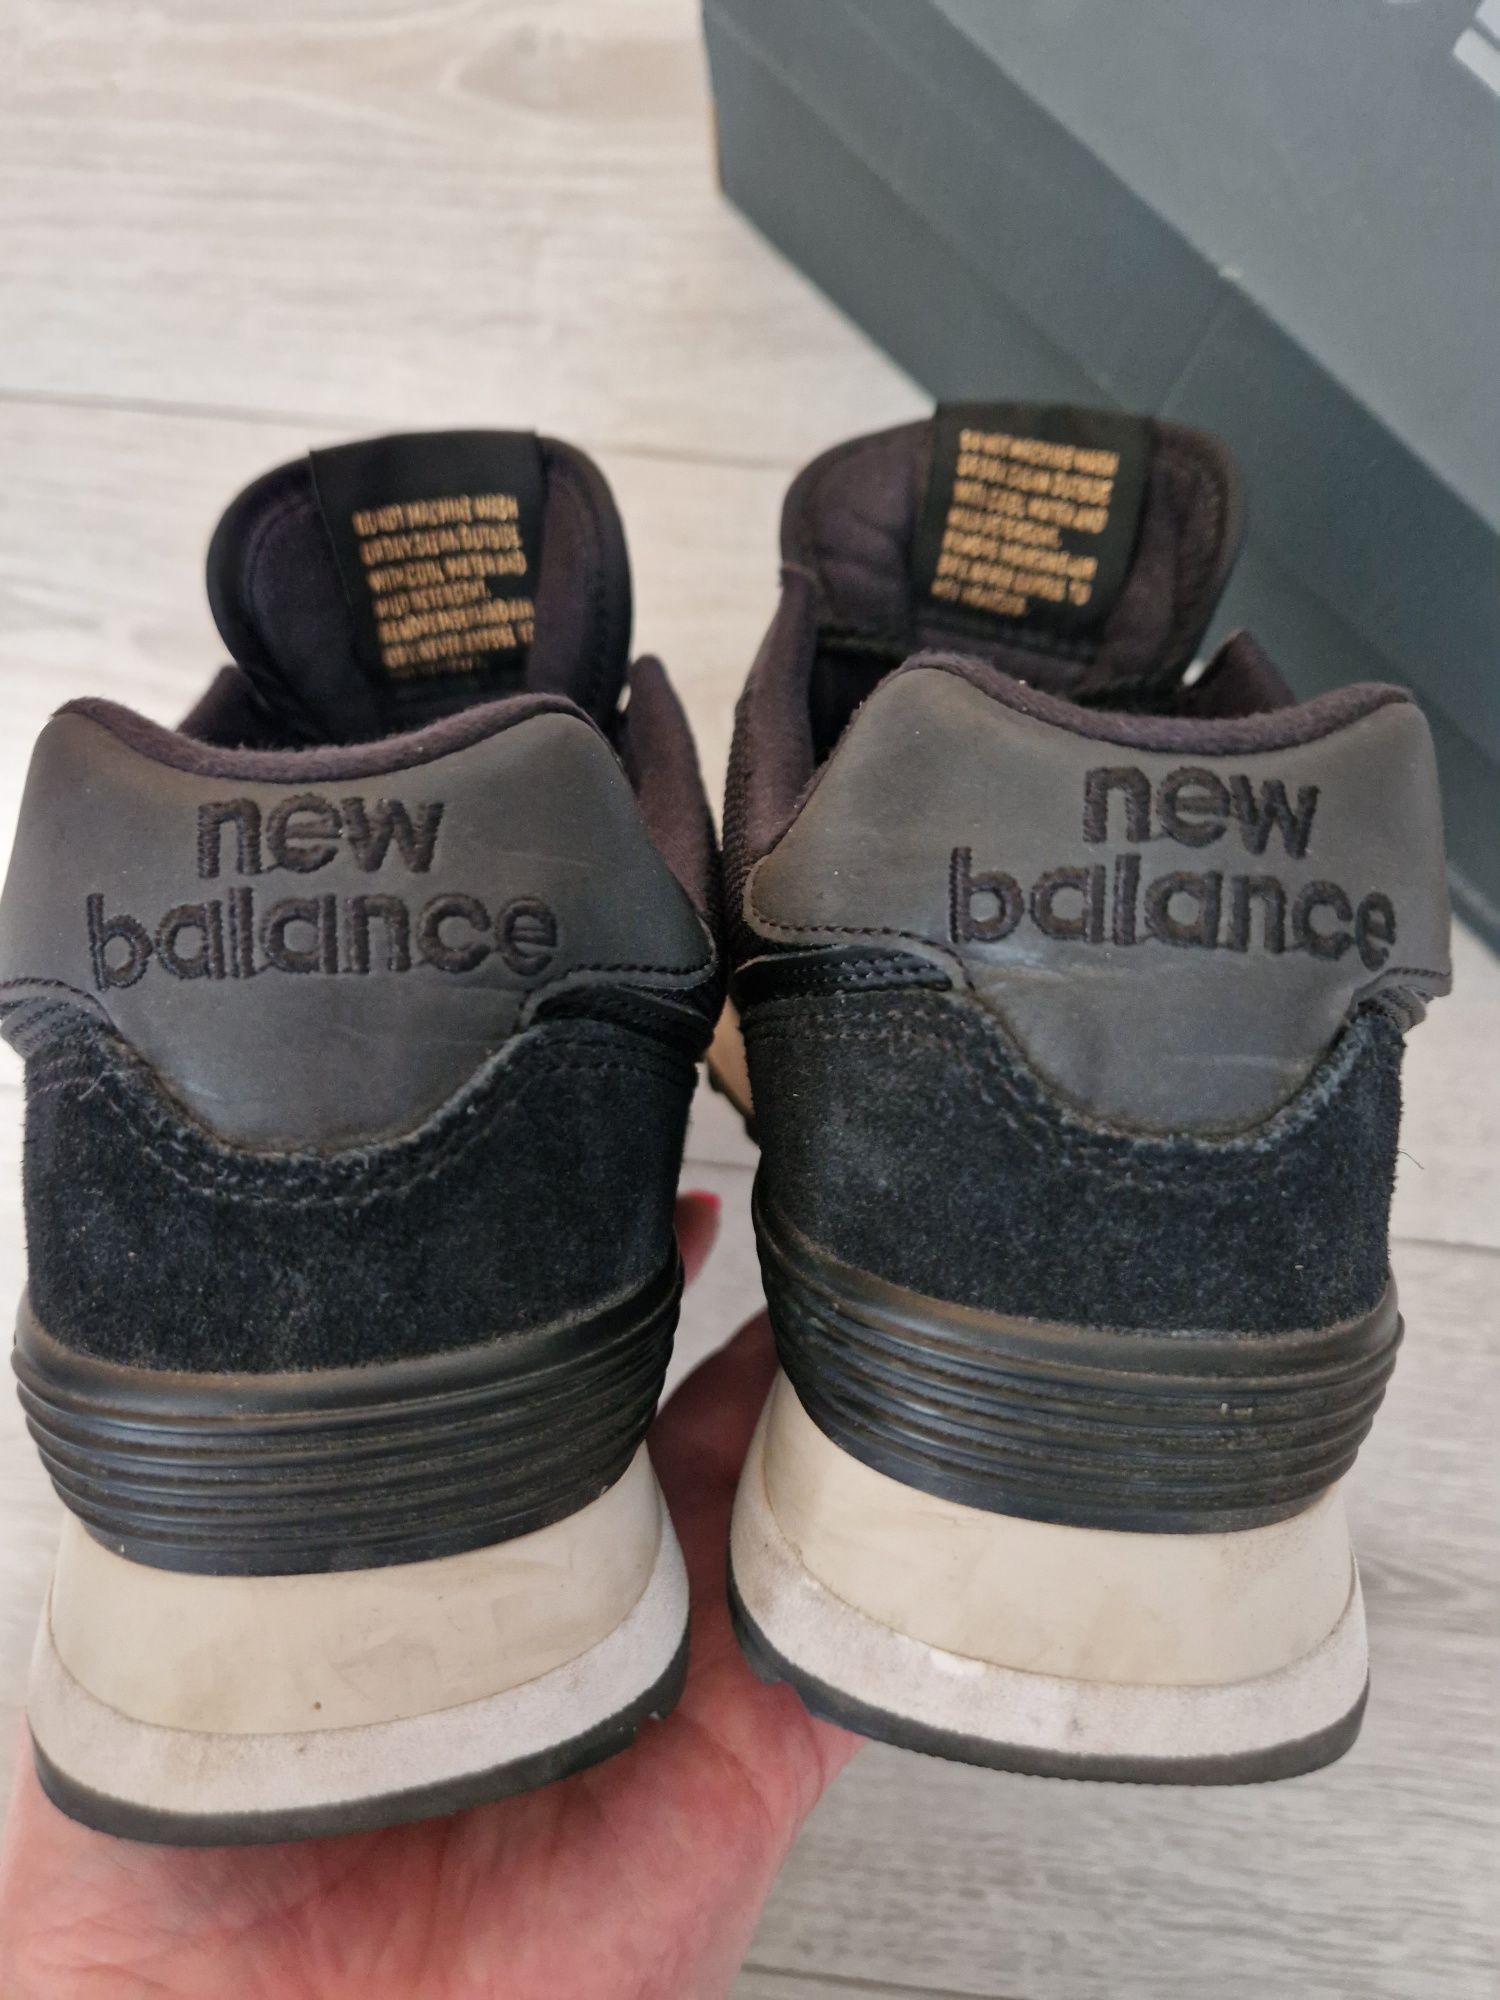 New Balance 574, rozmiar 38, używane jak nowe